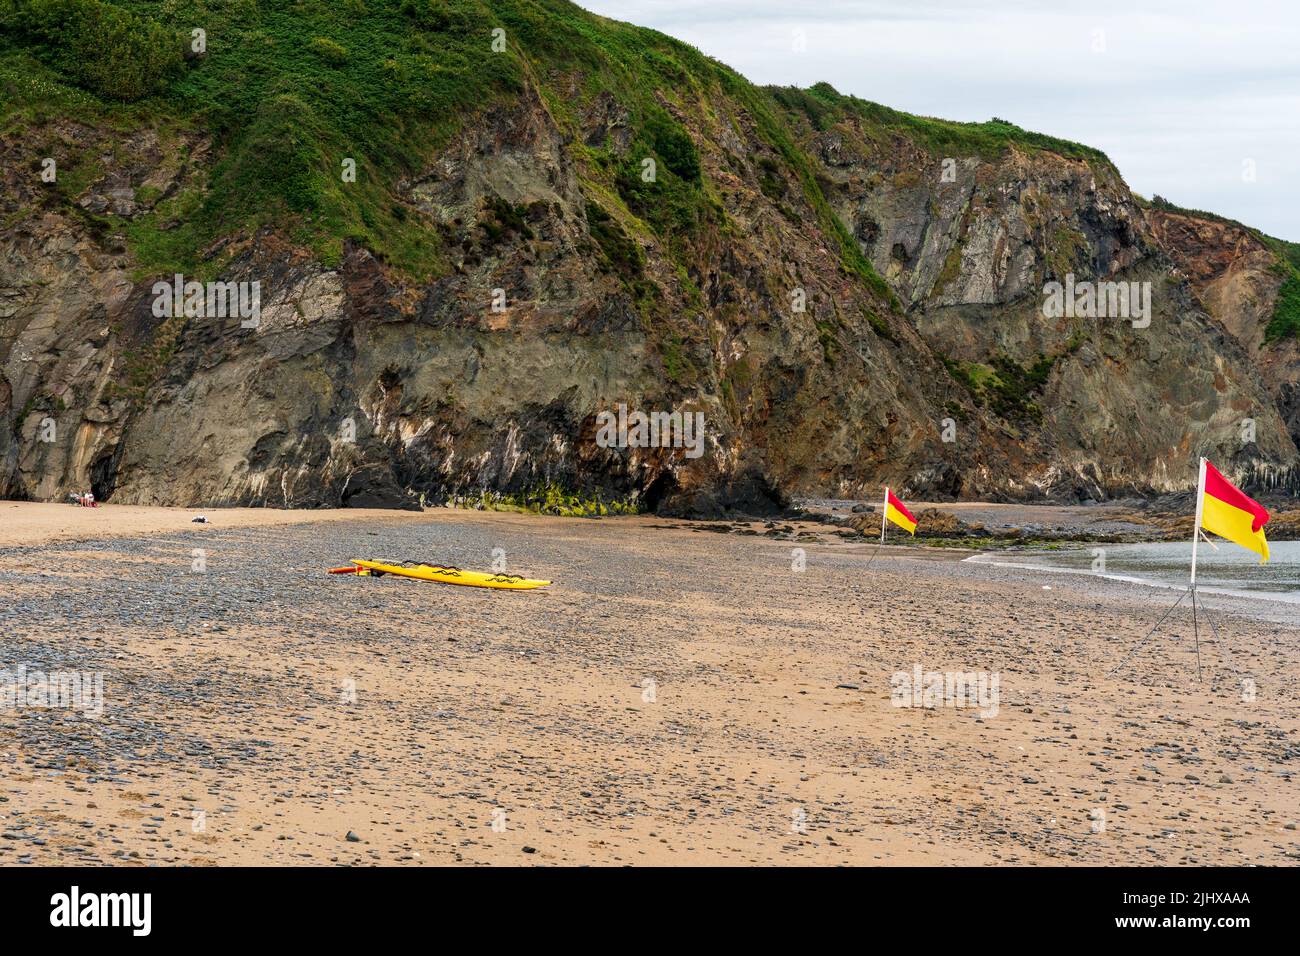 Zone de sécurité de la plage pour nager les drapeaux et les sauveteurs paddle board à Tresaith Ceredigion West Wales Royaume-Uni Banque D'Images